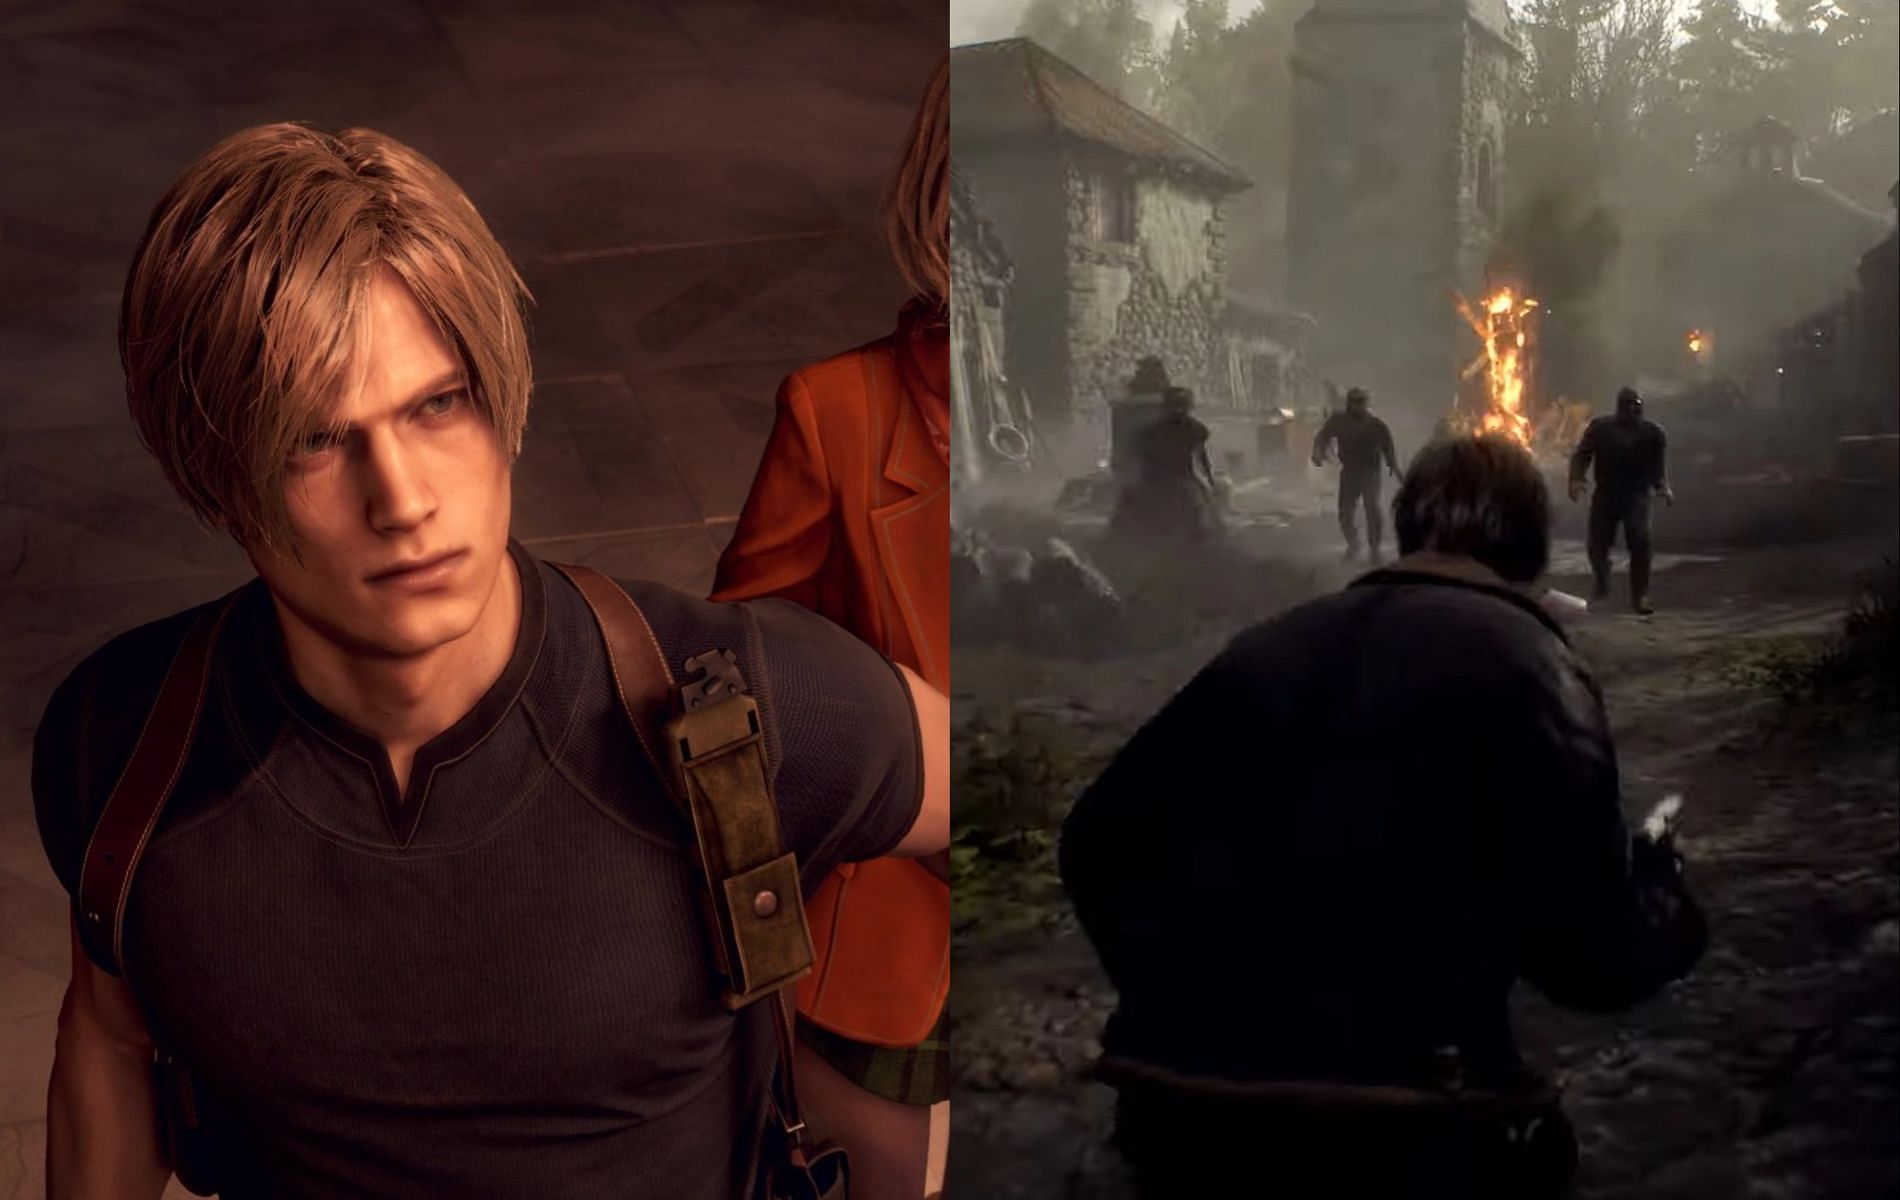 Resident Evil 4 Remake ganha demo no Capcom Spotlight; veja outros anúncios  - ContilNet Notícias